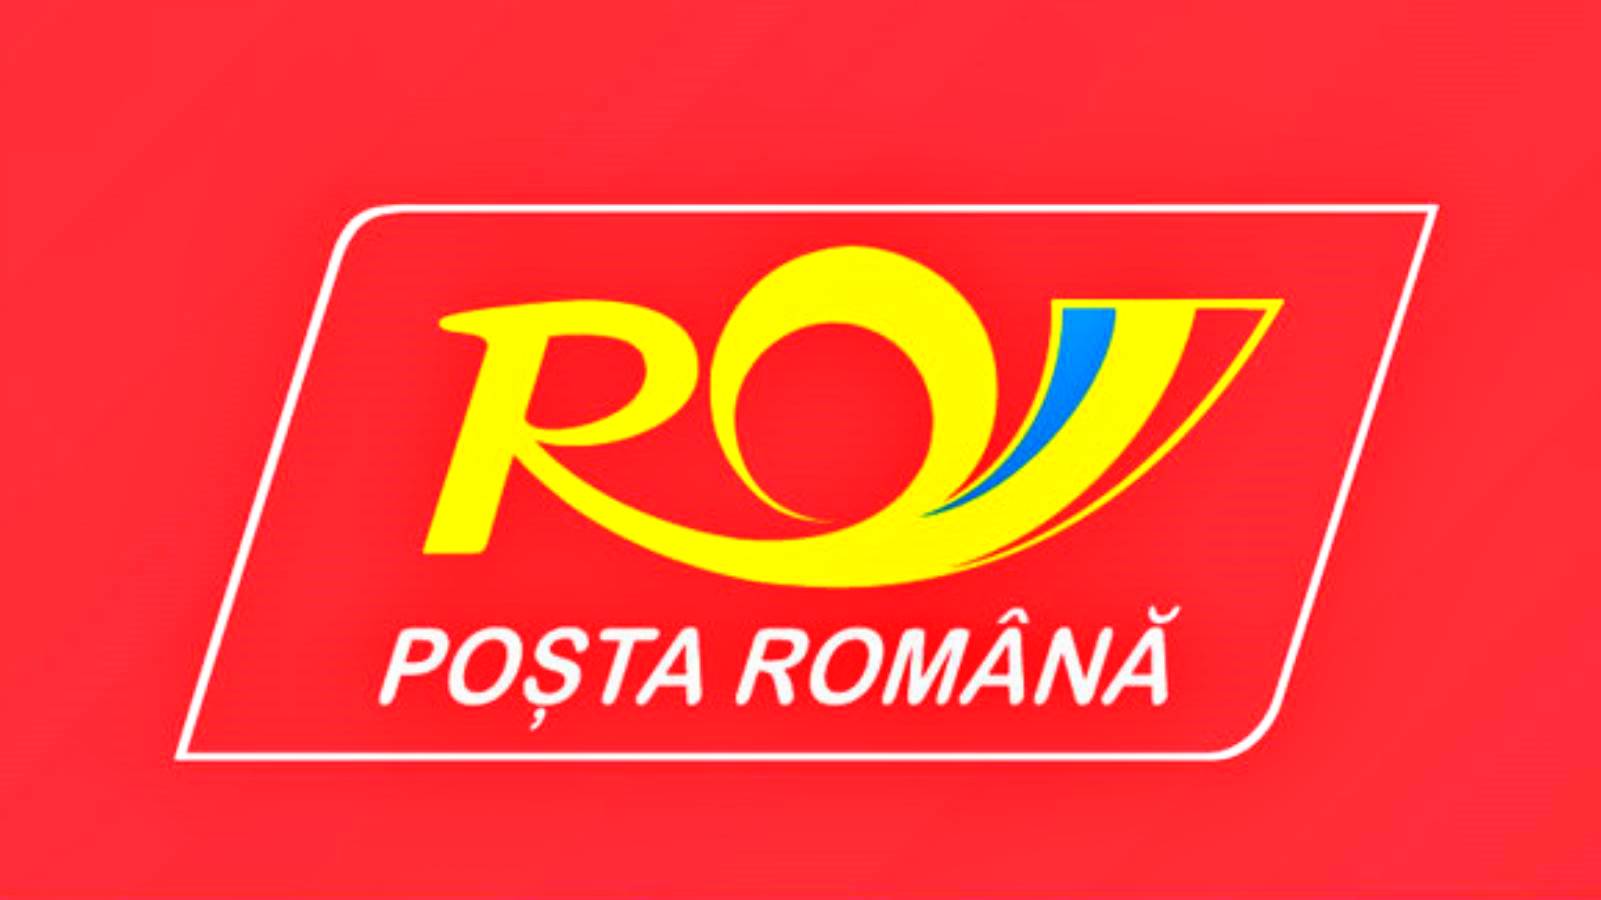 Continúa la modernización del correo rumano Anuncio hecho empresa